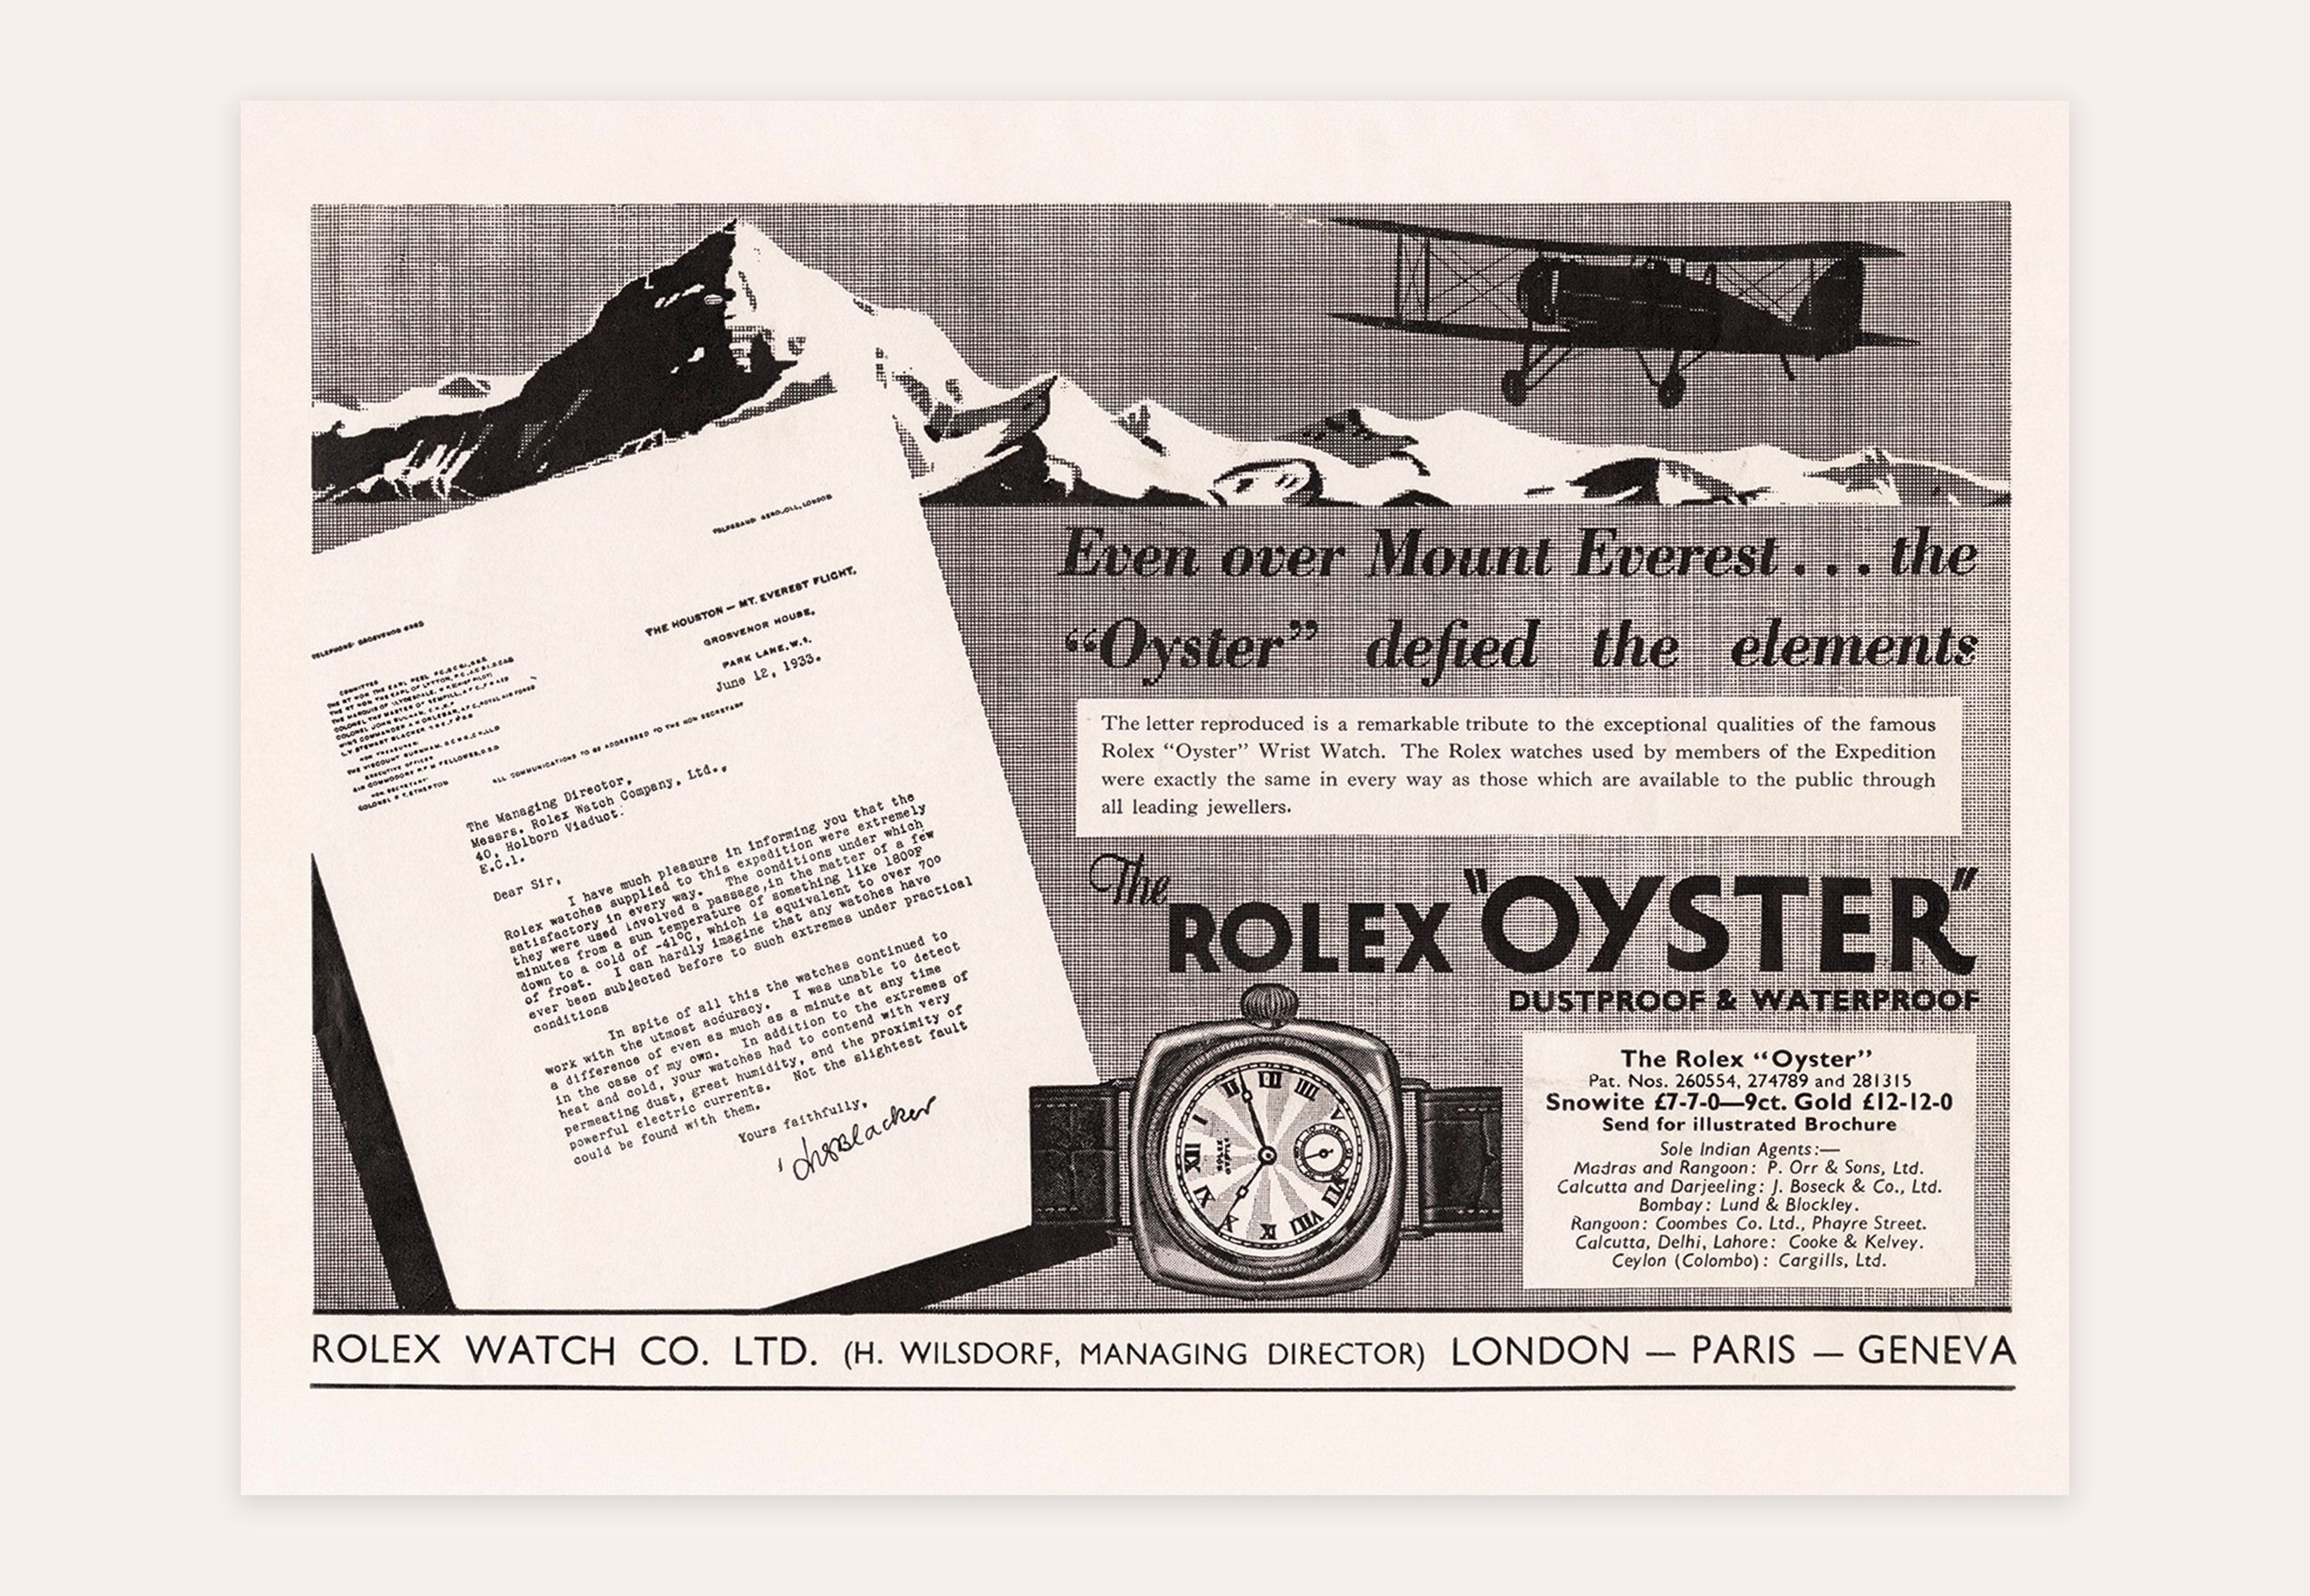 Sogar über den Mount Everest ... Die Rolex OYSTER trotzt den Elementen.